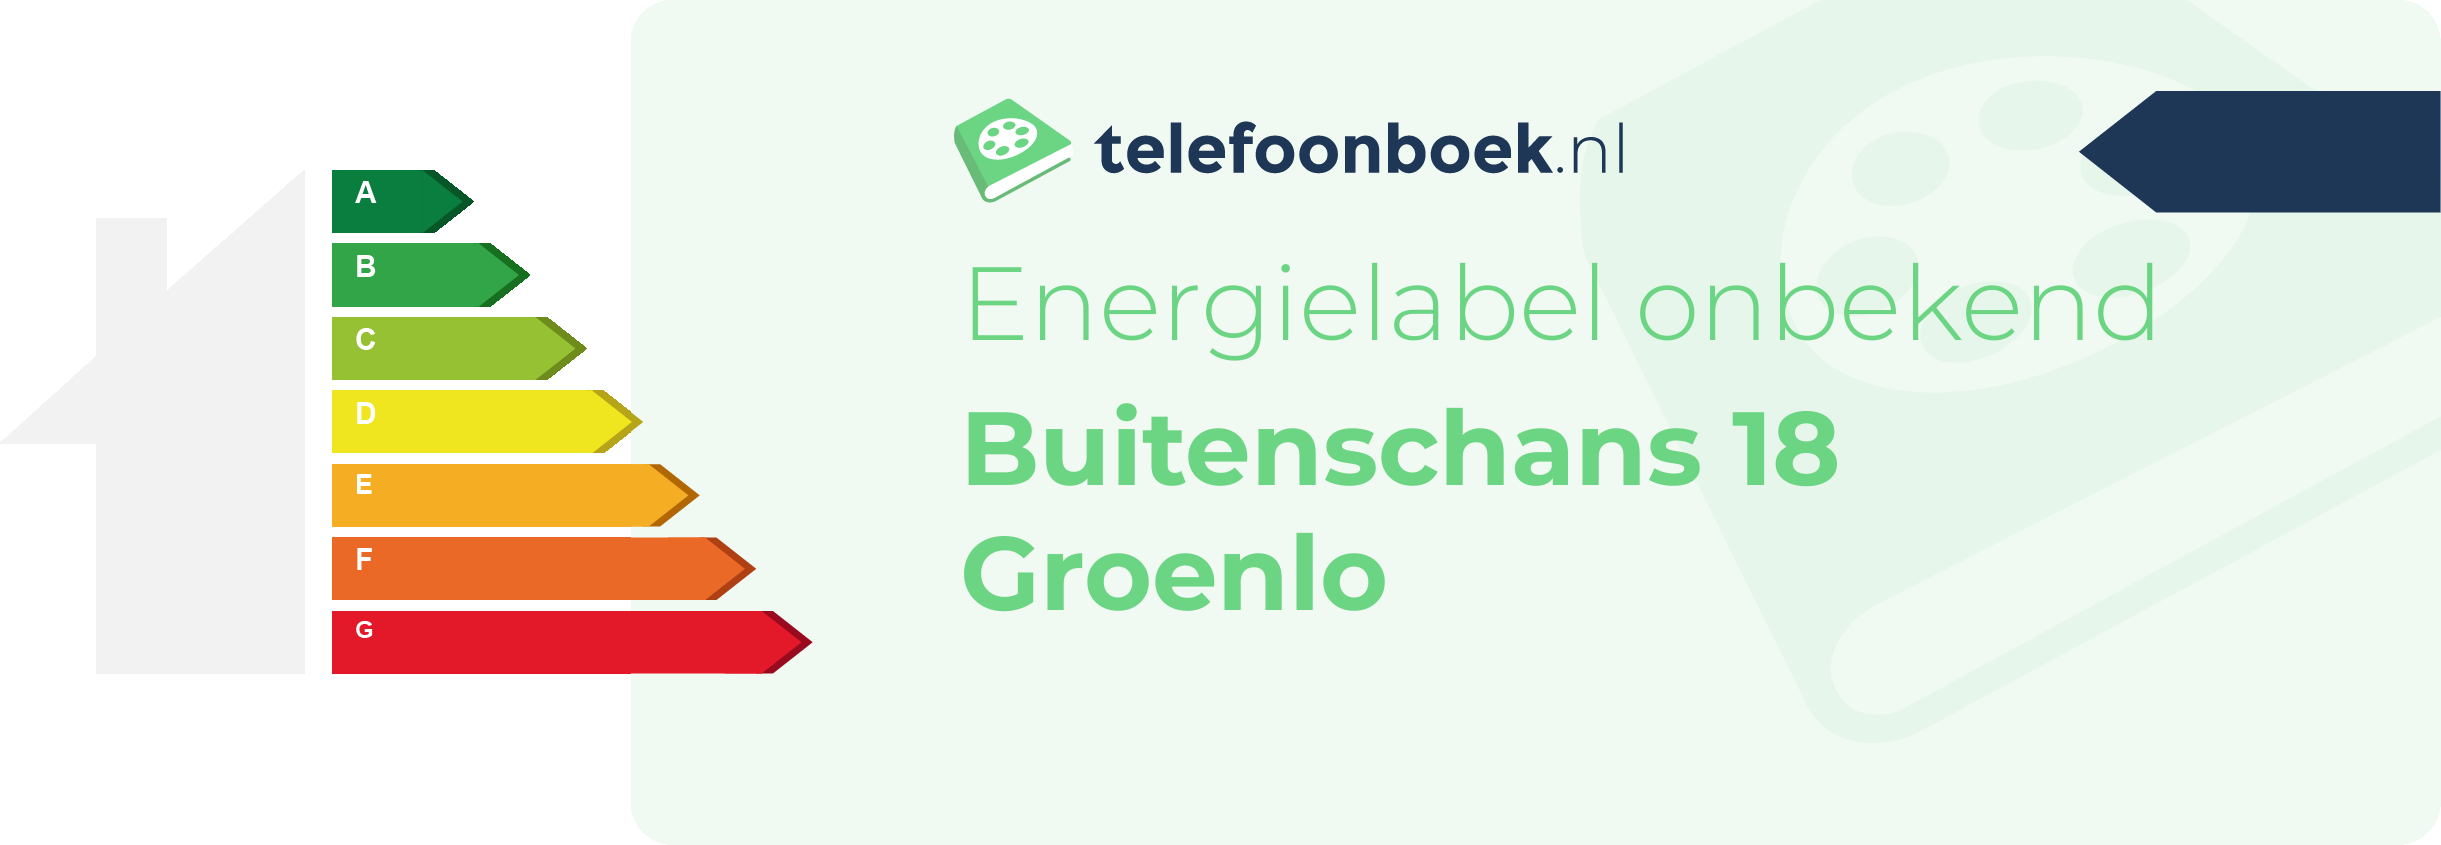 Energielabel Buitenschans 18 Groenlo